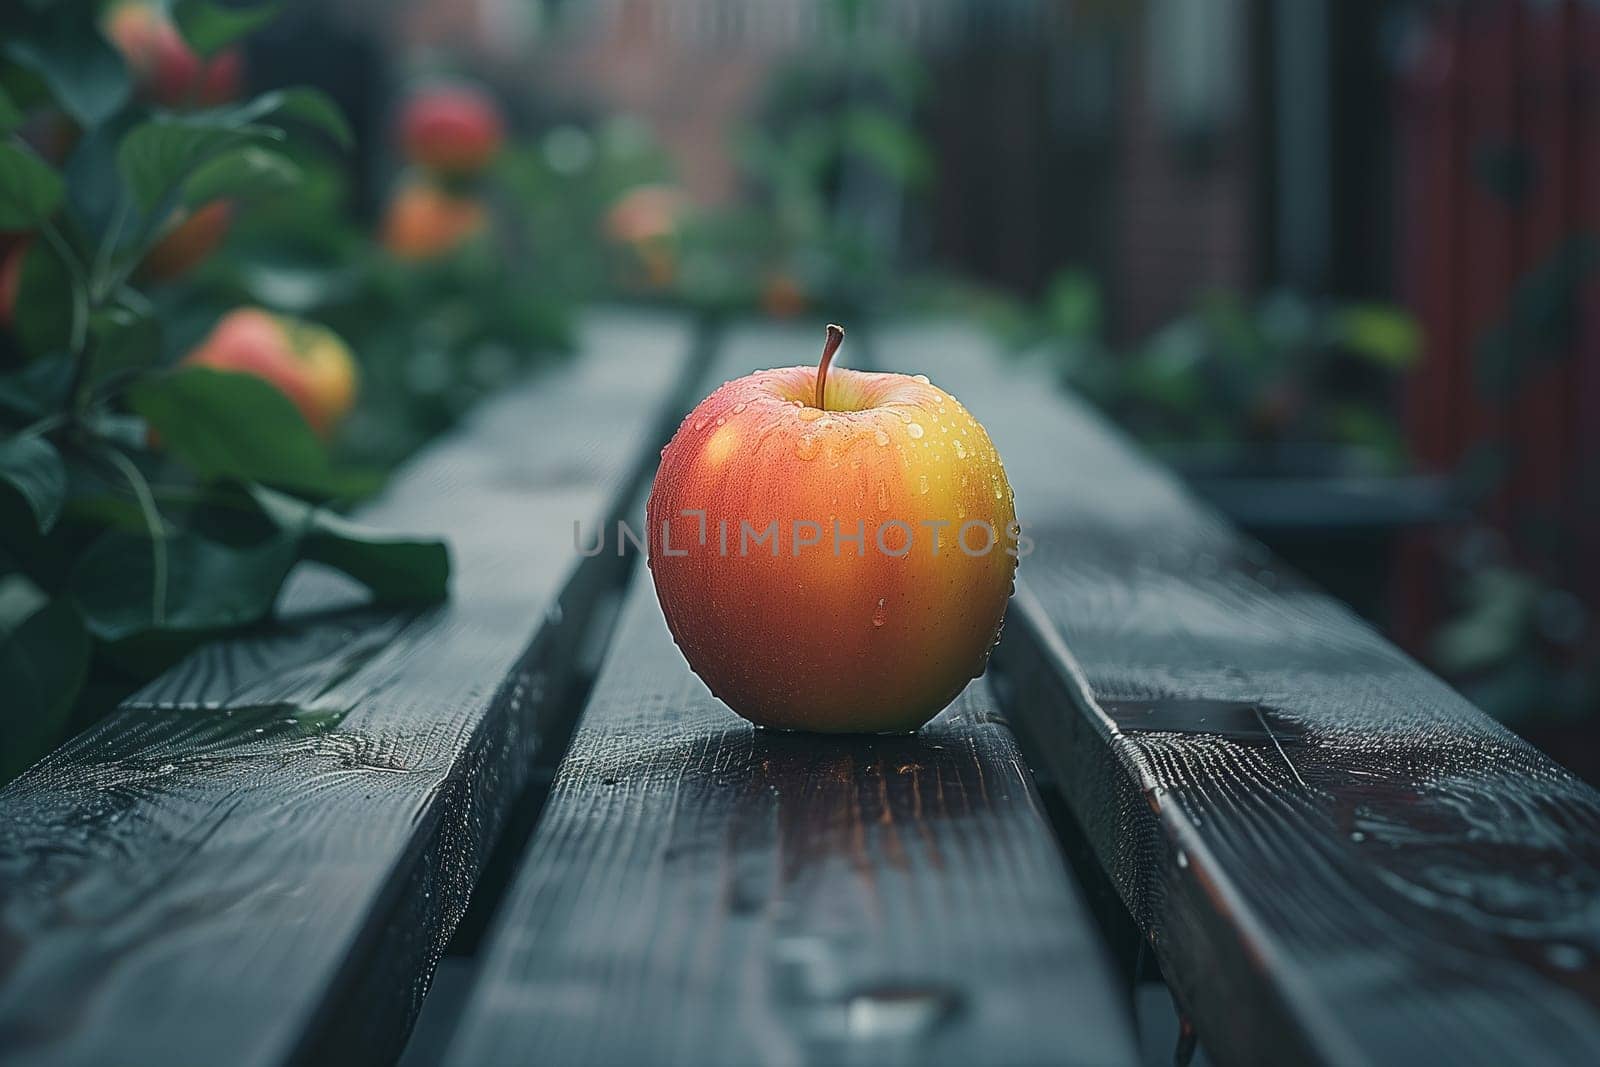 An apple lies on a wooden bench in an autumn park. Close-up.